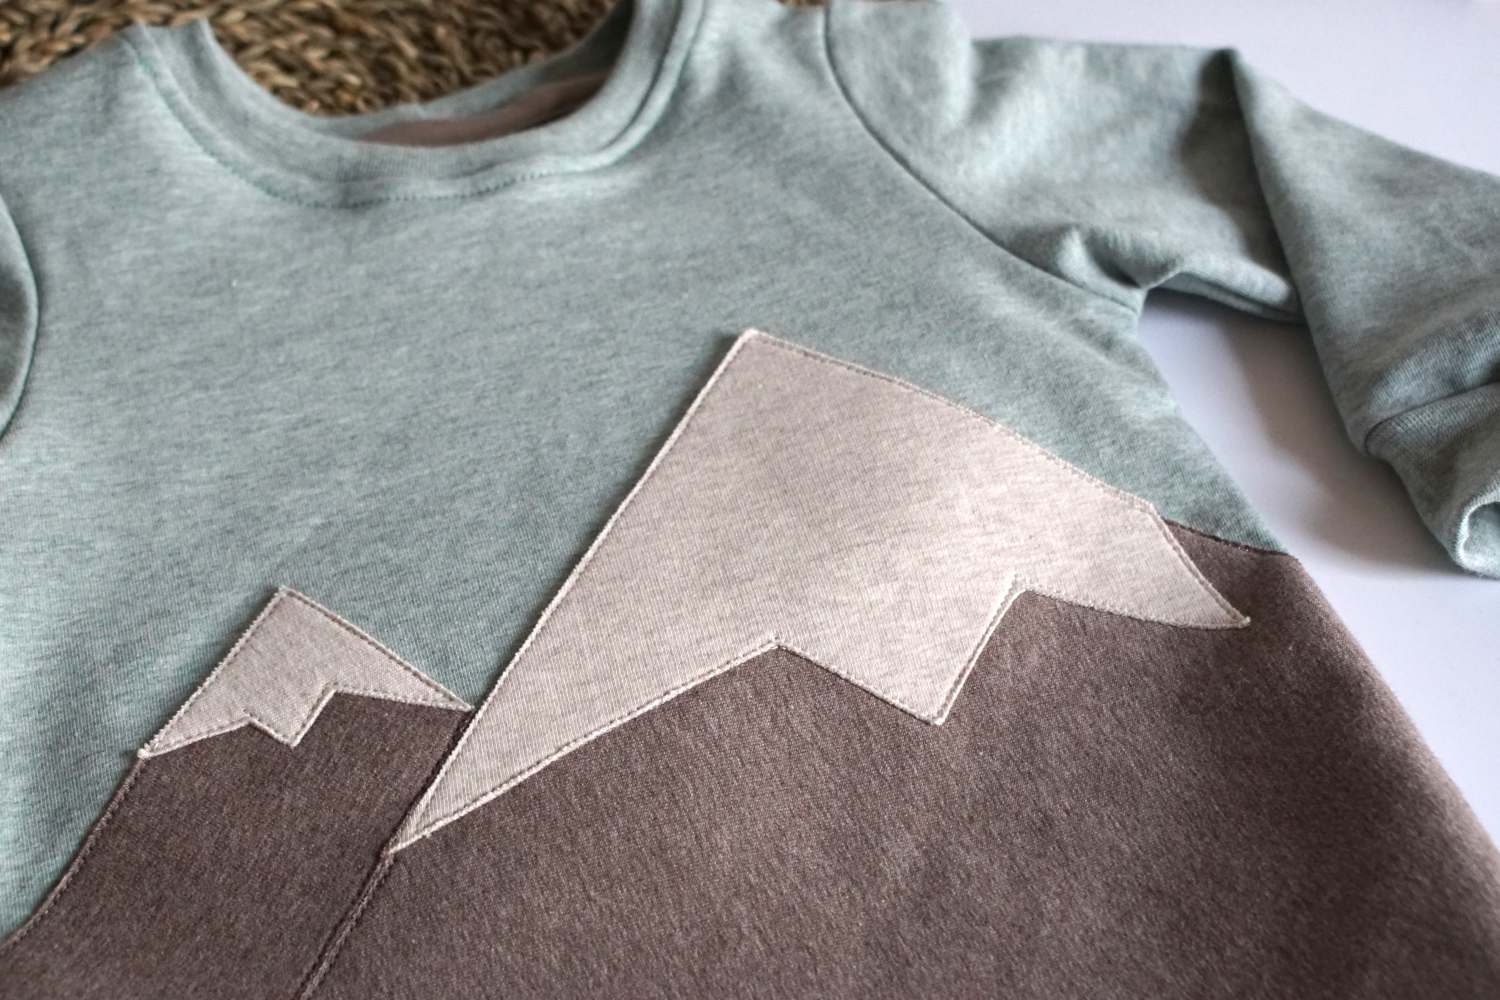 Kauf auf Bestellung Handmade Sweater mit Gebirge Gr. 56-146 von kate.m Design 3